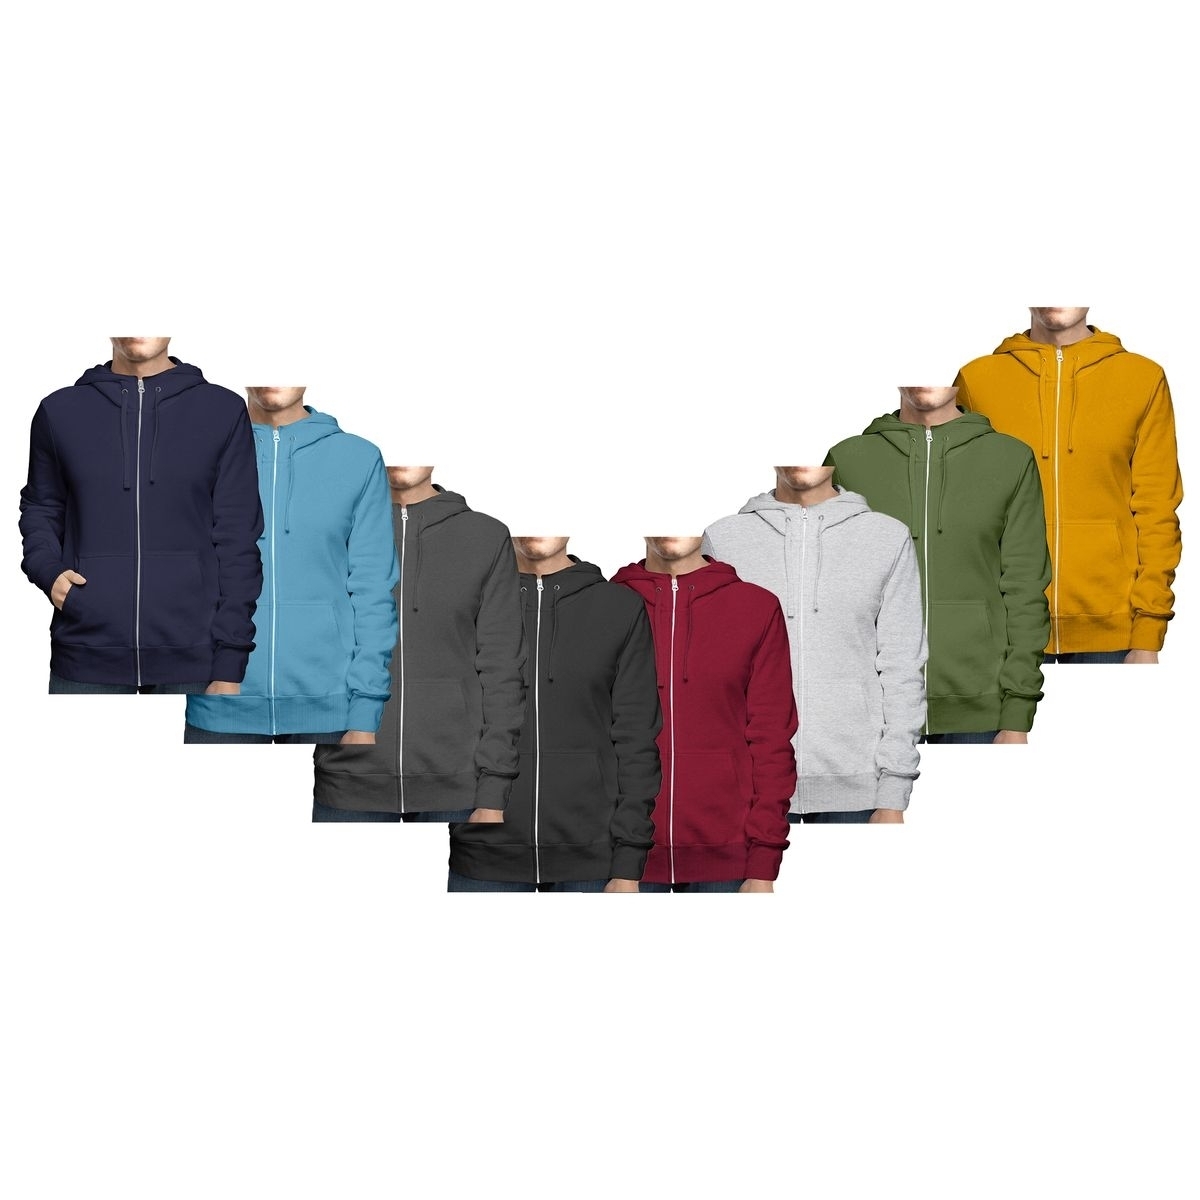 Men's Winter Warm Cozy Full Zip-Up Fleece Lined Soft Hoodie Sweatshirt - Grey, Small